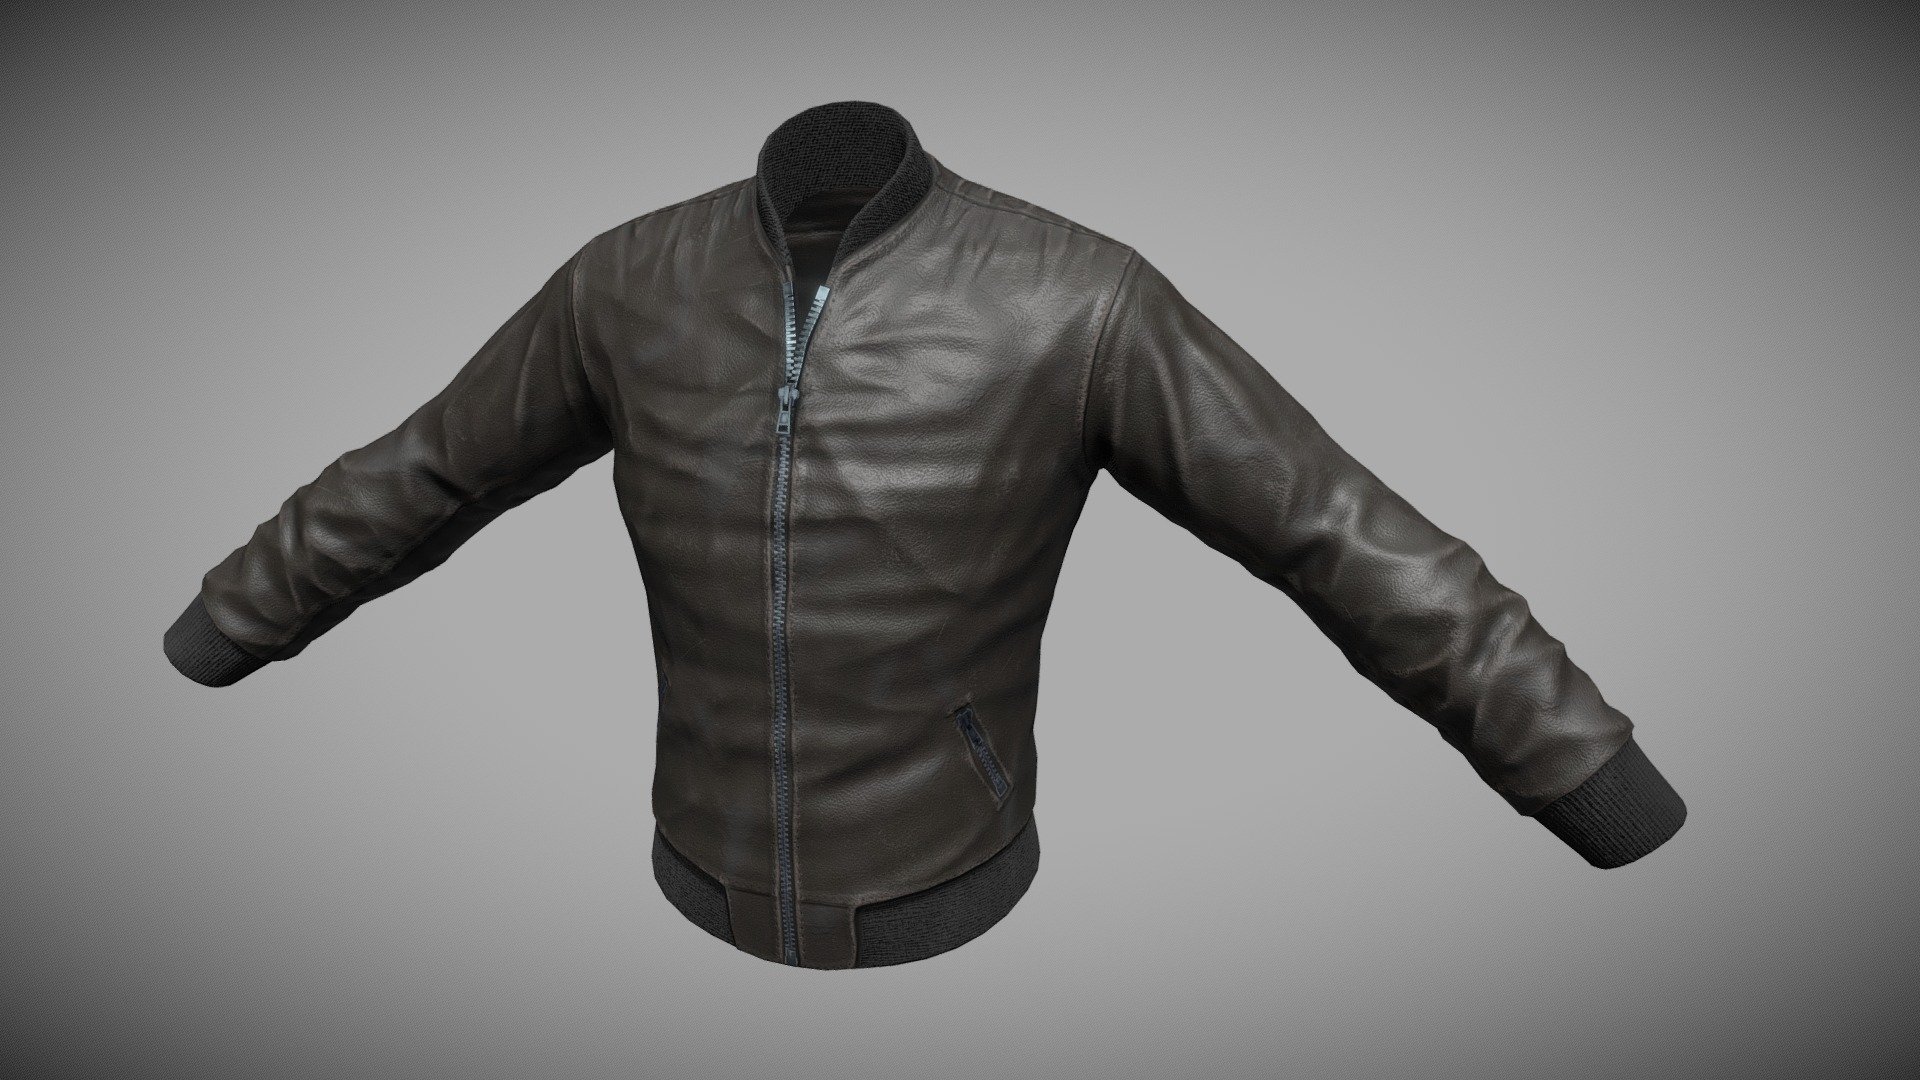 Jacket Model - 3D model by Triple_0t 3d model